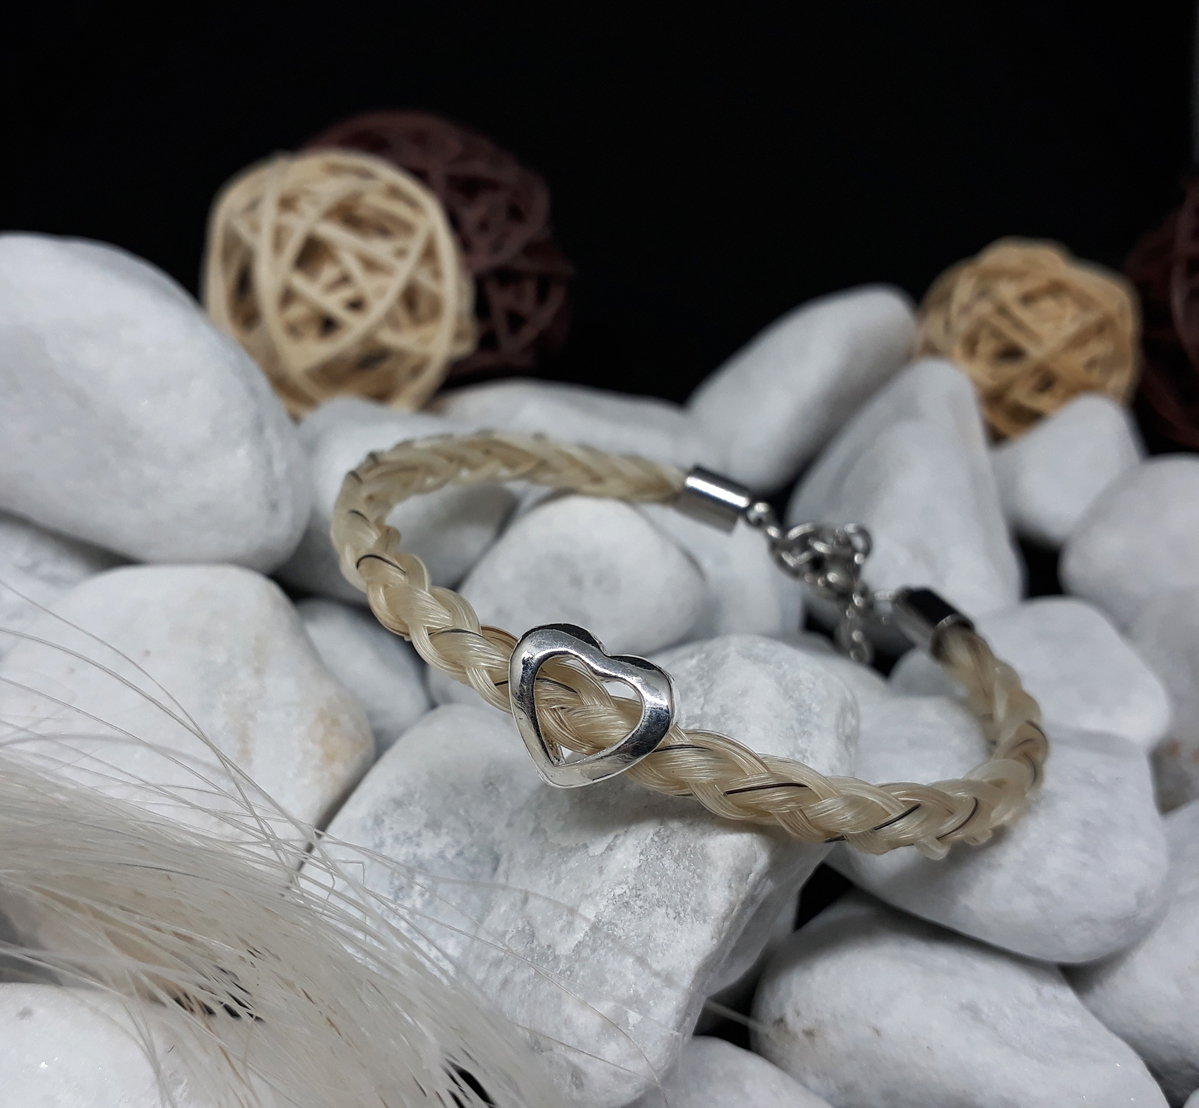 R6-Herz-offen: Rund geflochtenes Pferdehaar Armband aus 6 weißen Strängen mit einzelnen schwarzen Haaren, mit einer versilberten Perle "Herz offen", mit Edelstahl-Karabinerverschluss - Preis: 54 Euro